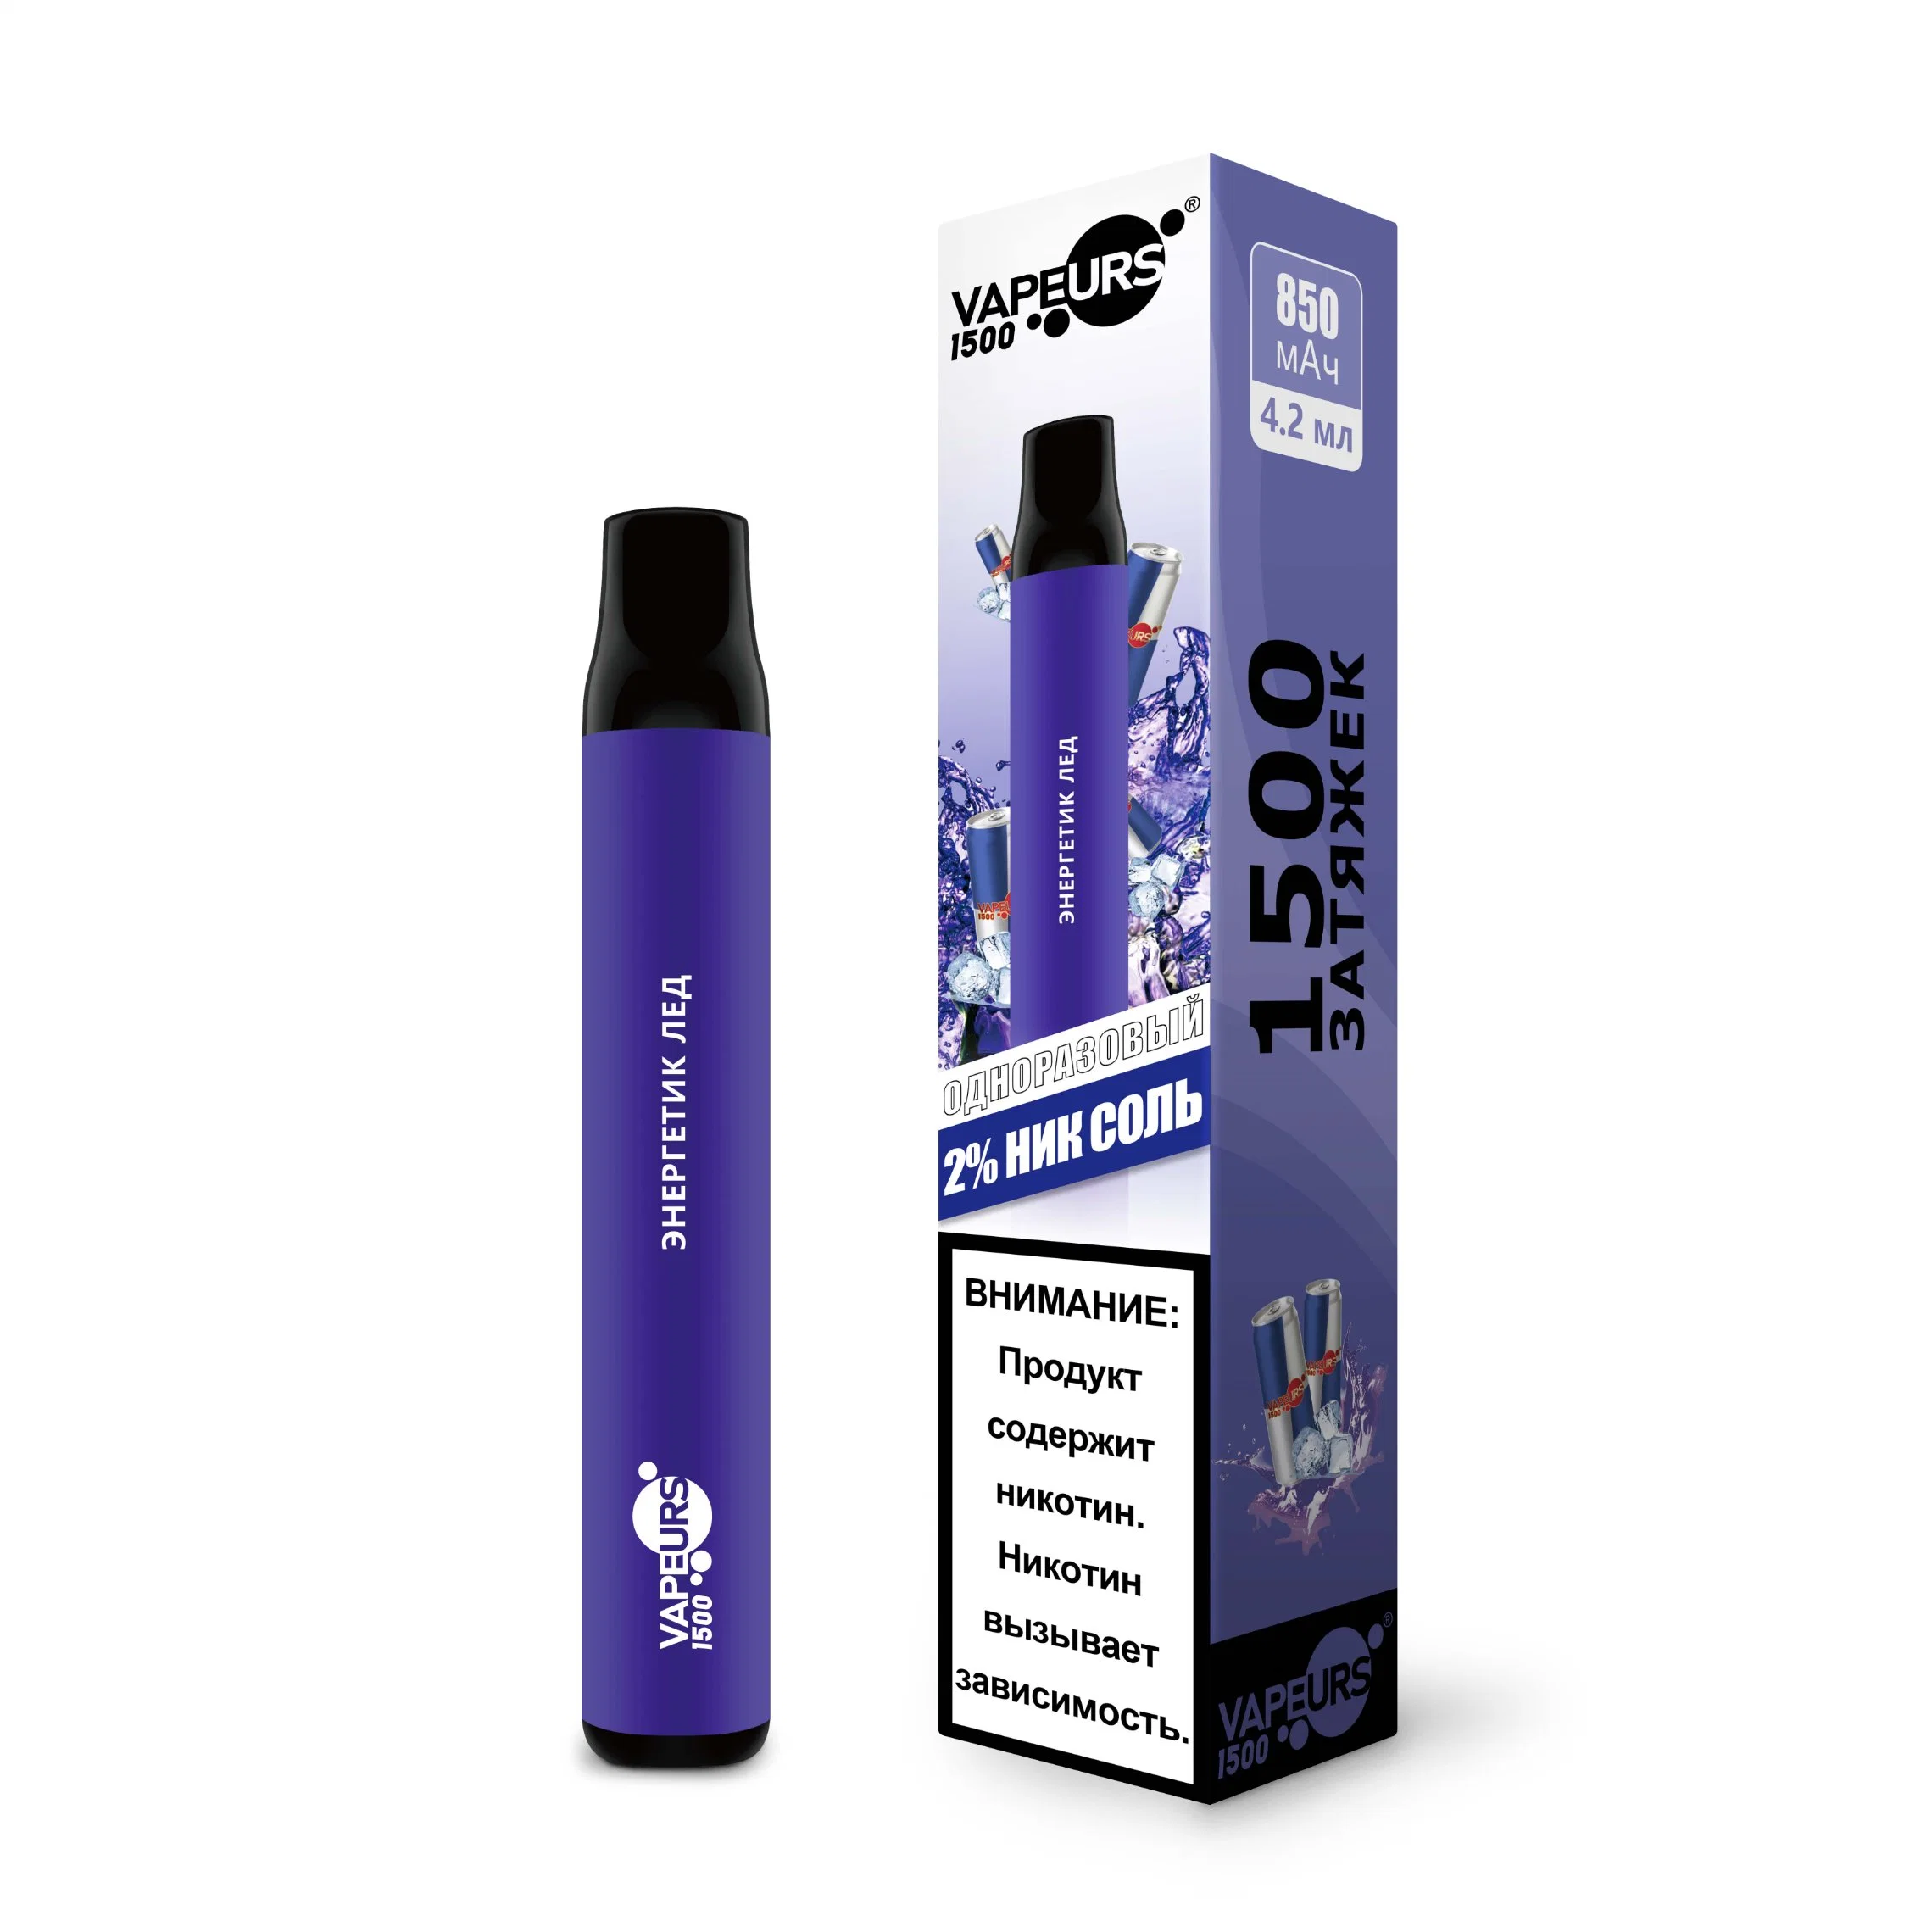 Neue elektronische Zigarette elektrische Eshisha OEM ODM China Factory 500 800 1500 Puffs Vape Pen Elektro Portable Hookah Preis